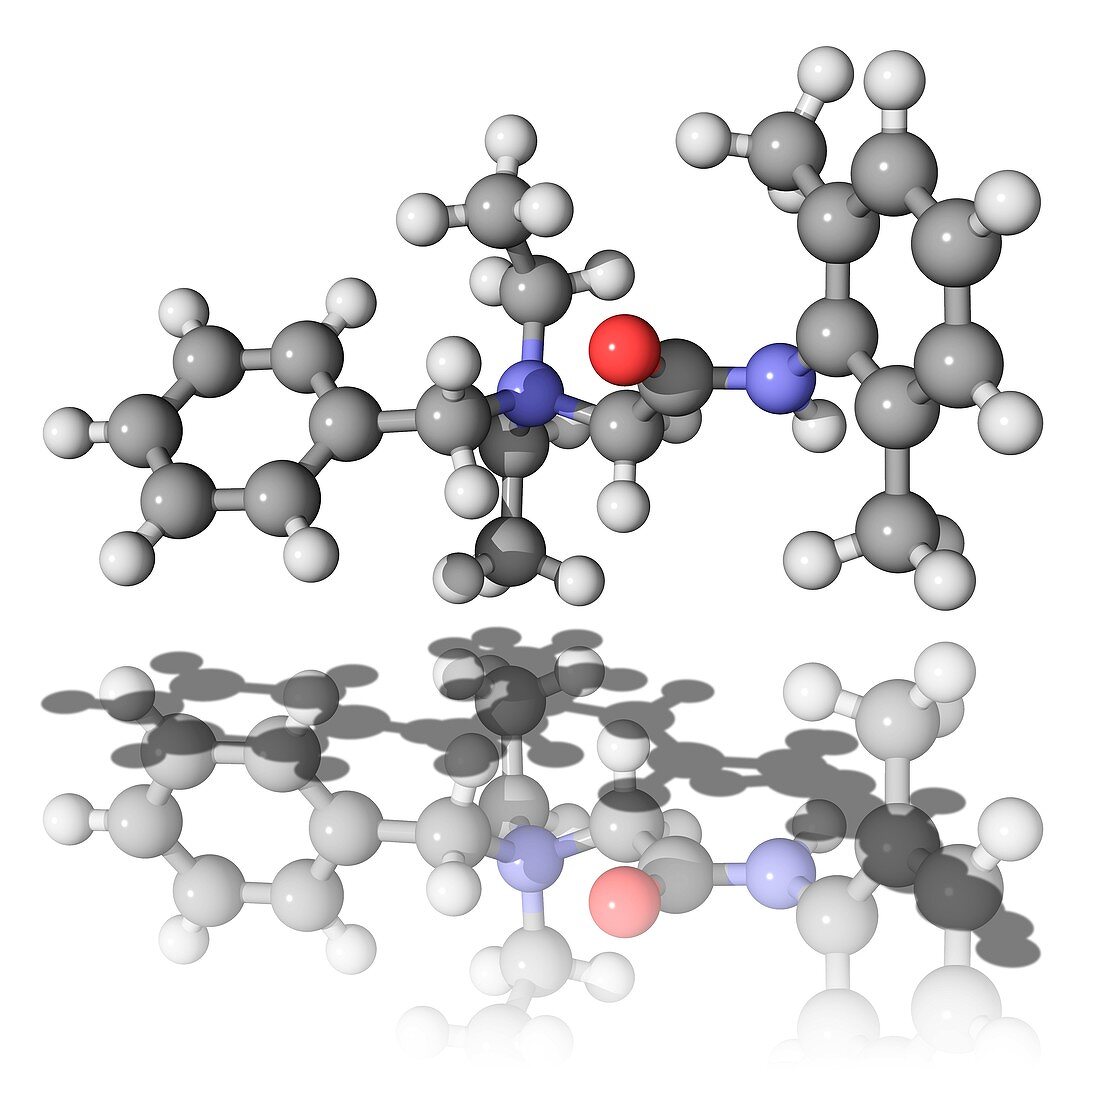 Denatonium molecule